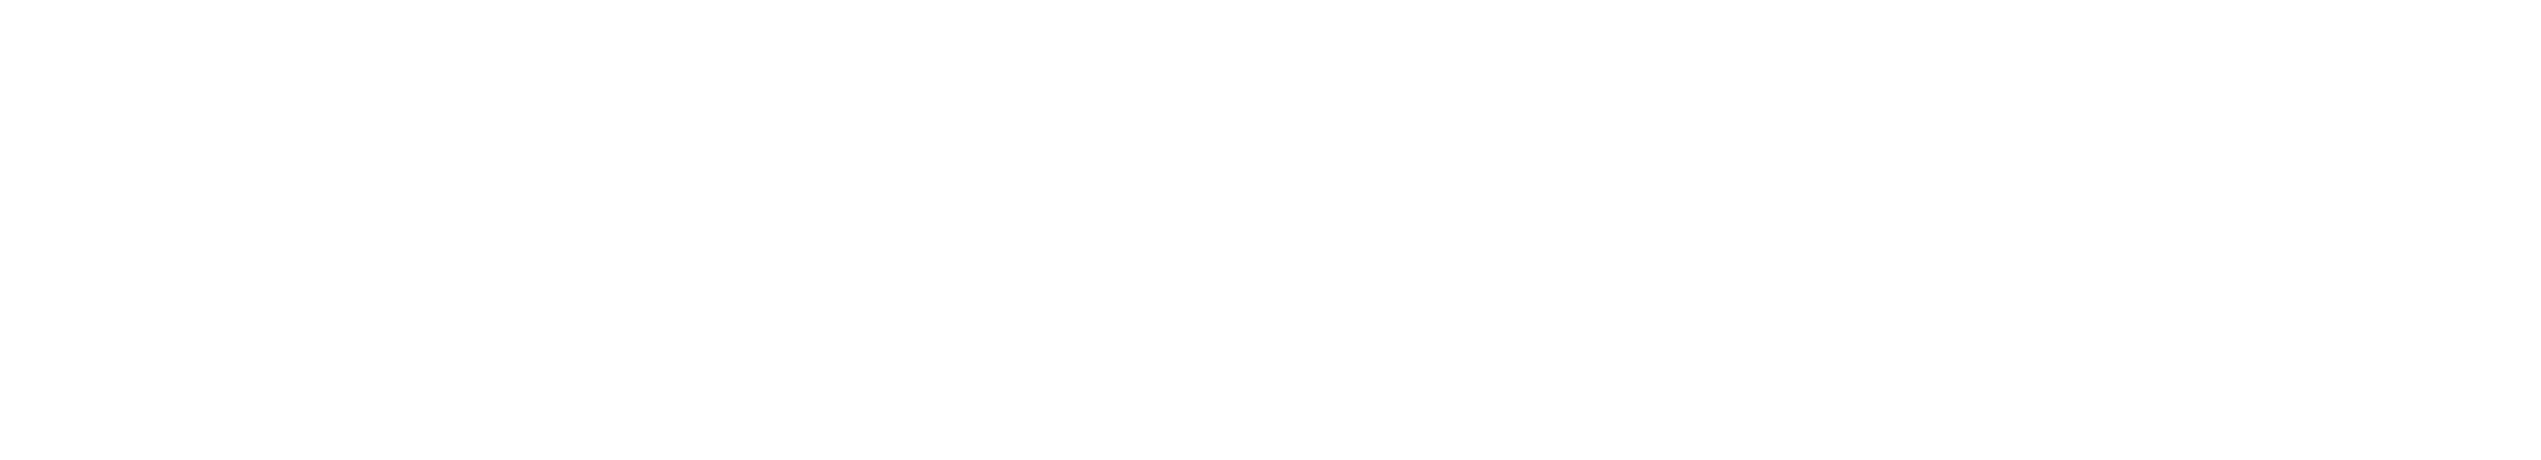 Crunchyroll Logo White